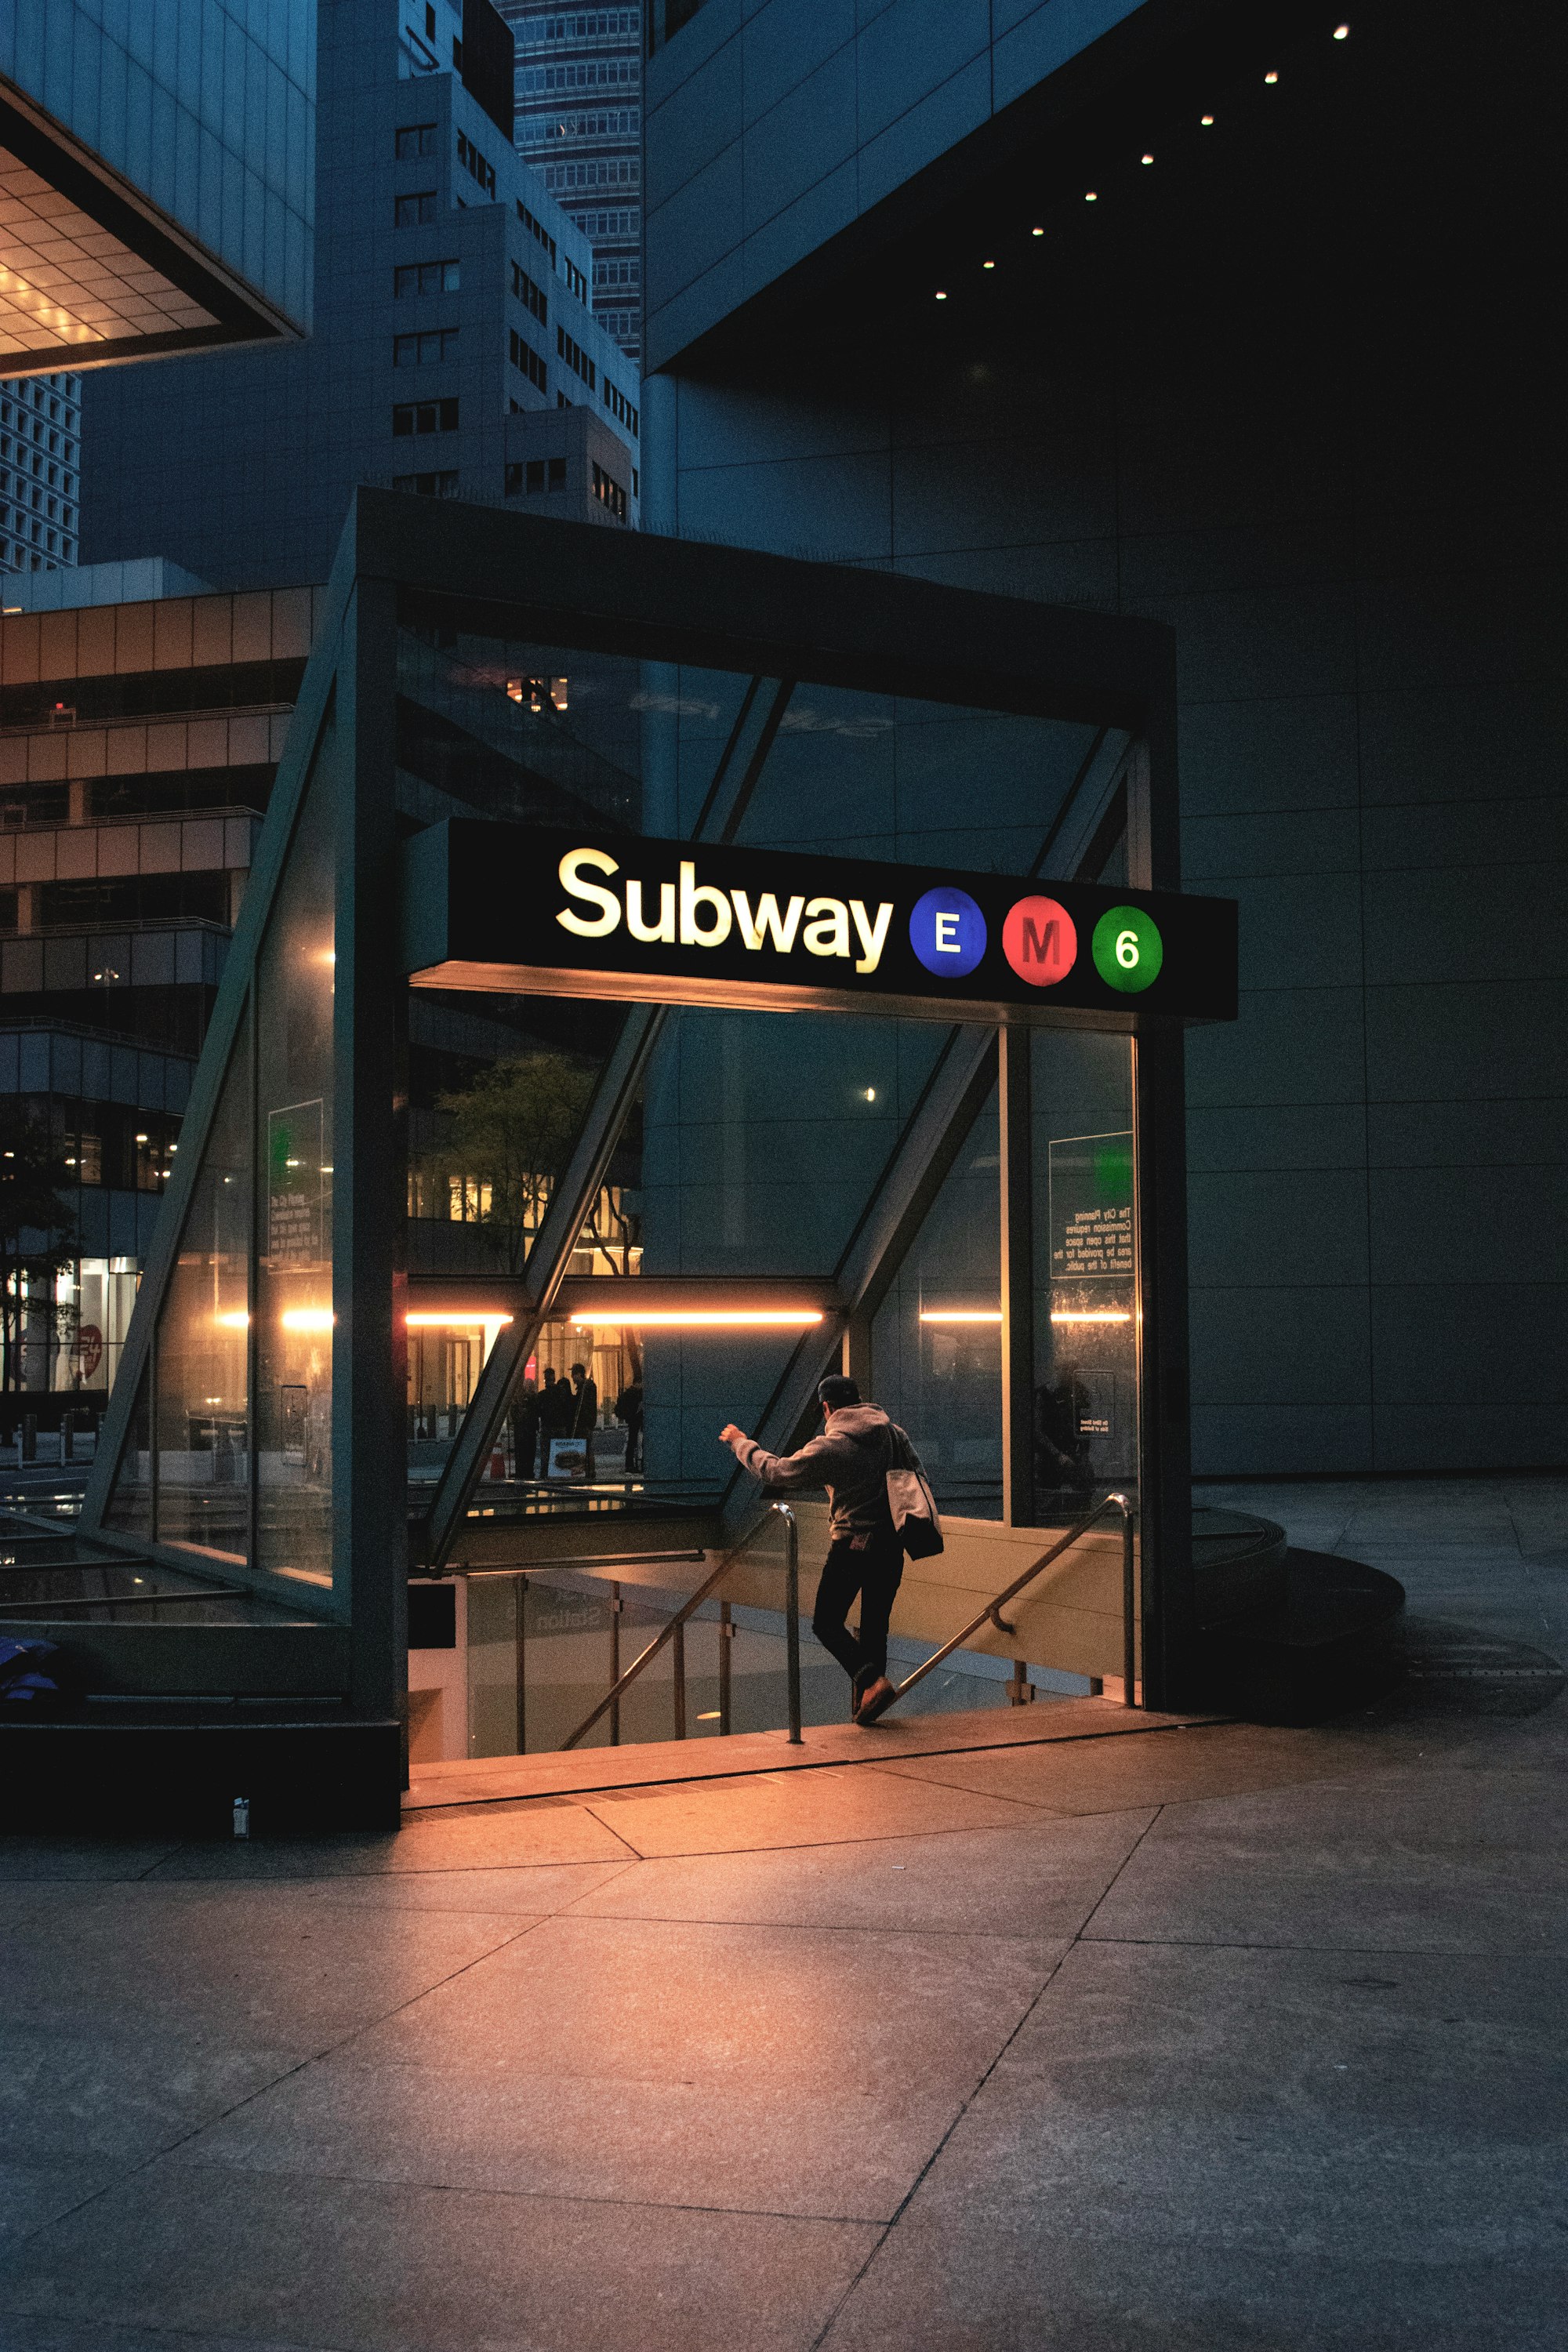 Subway Station at night.